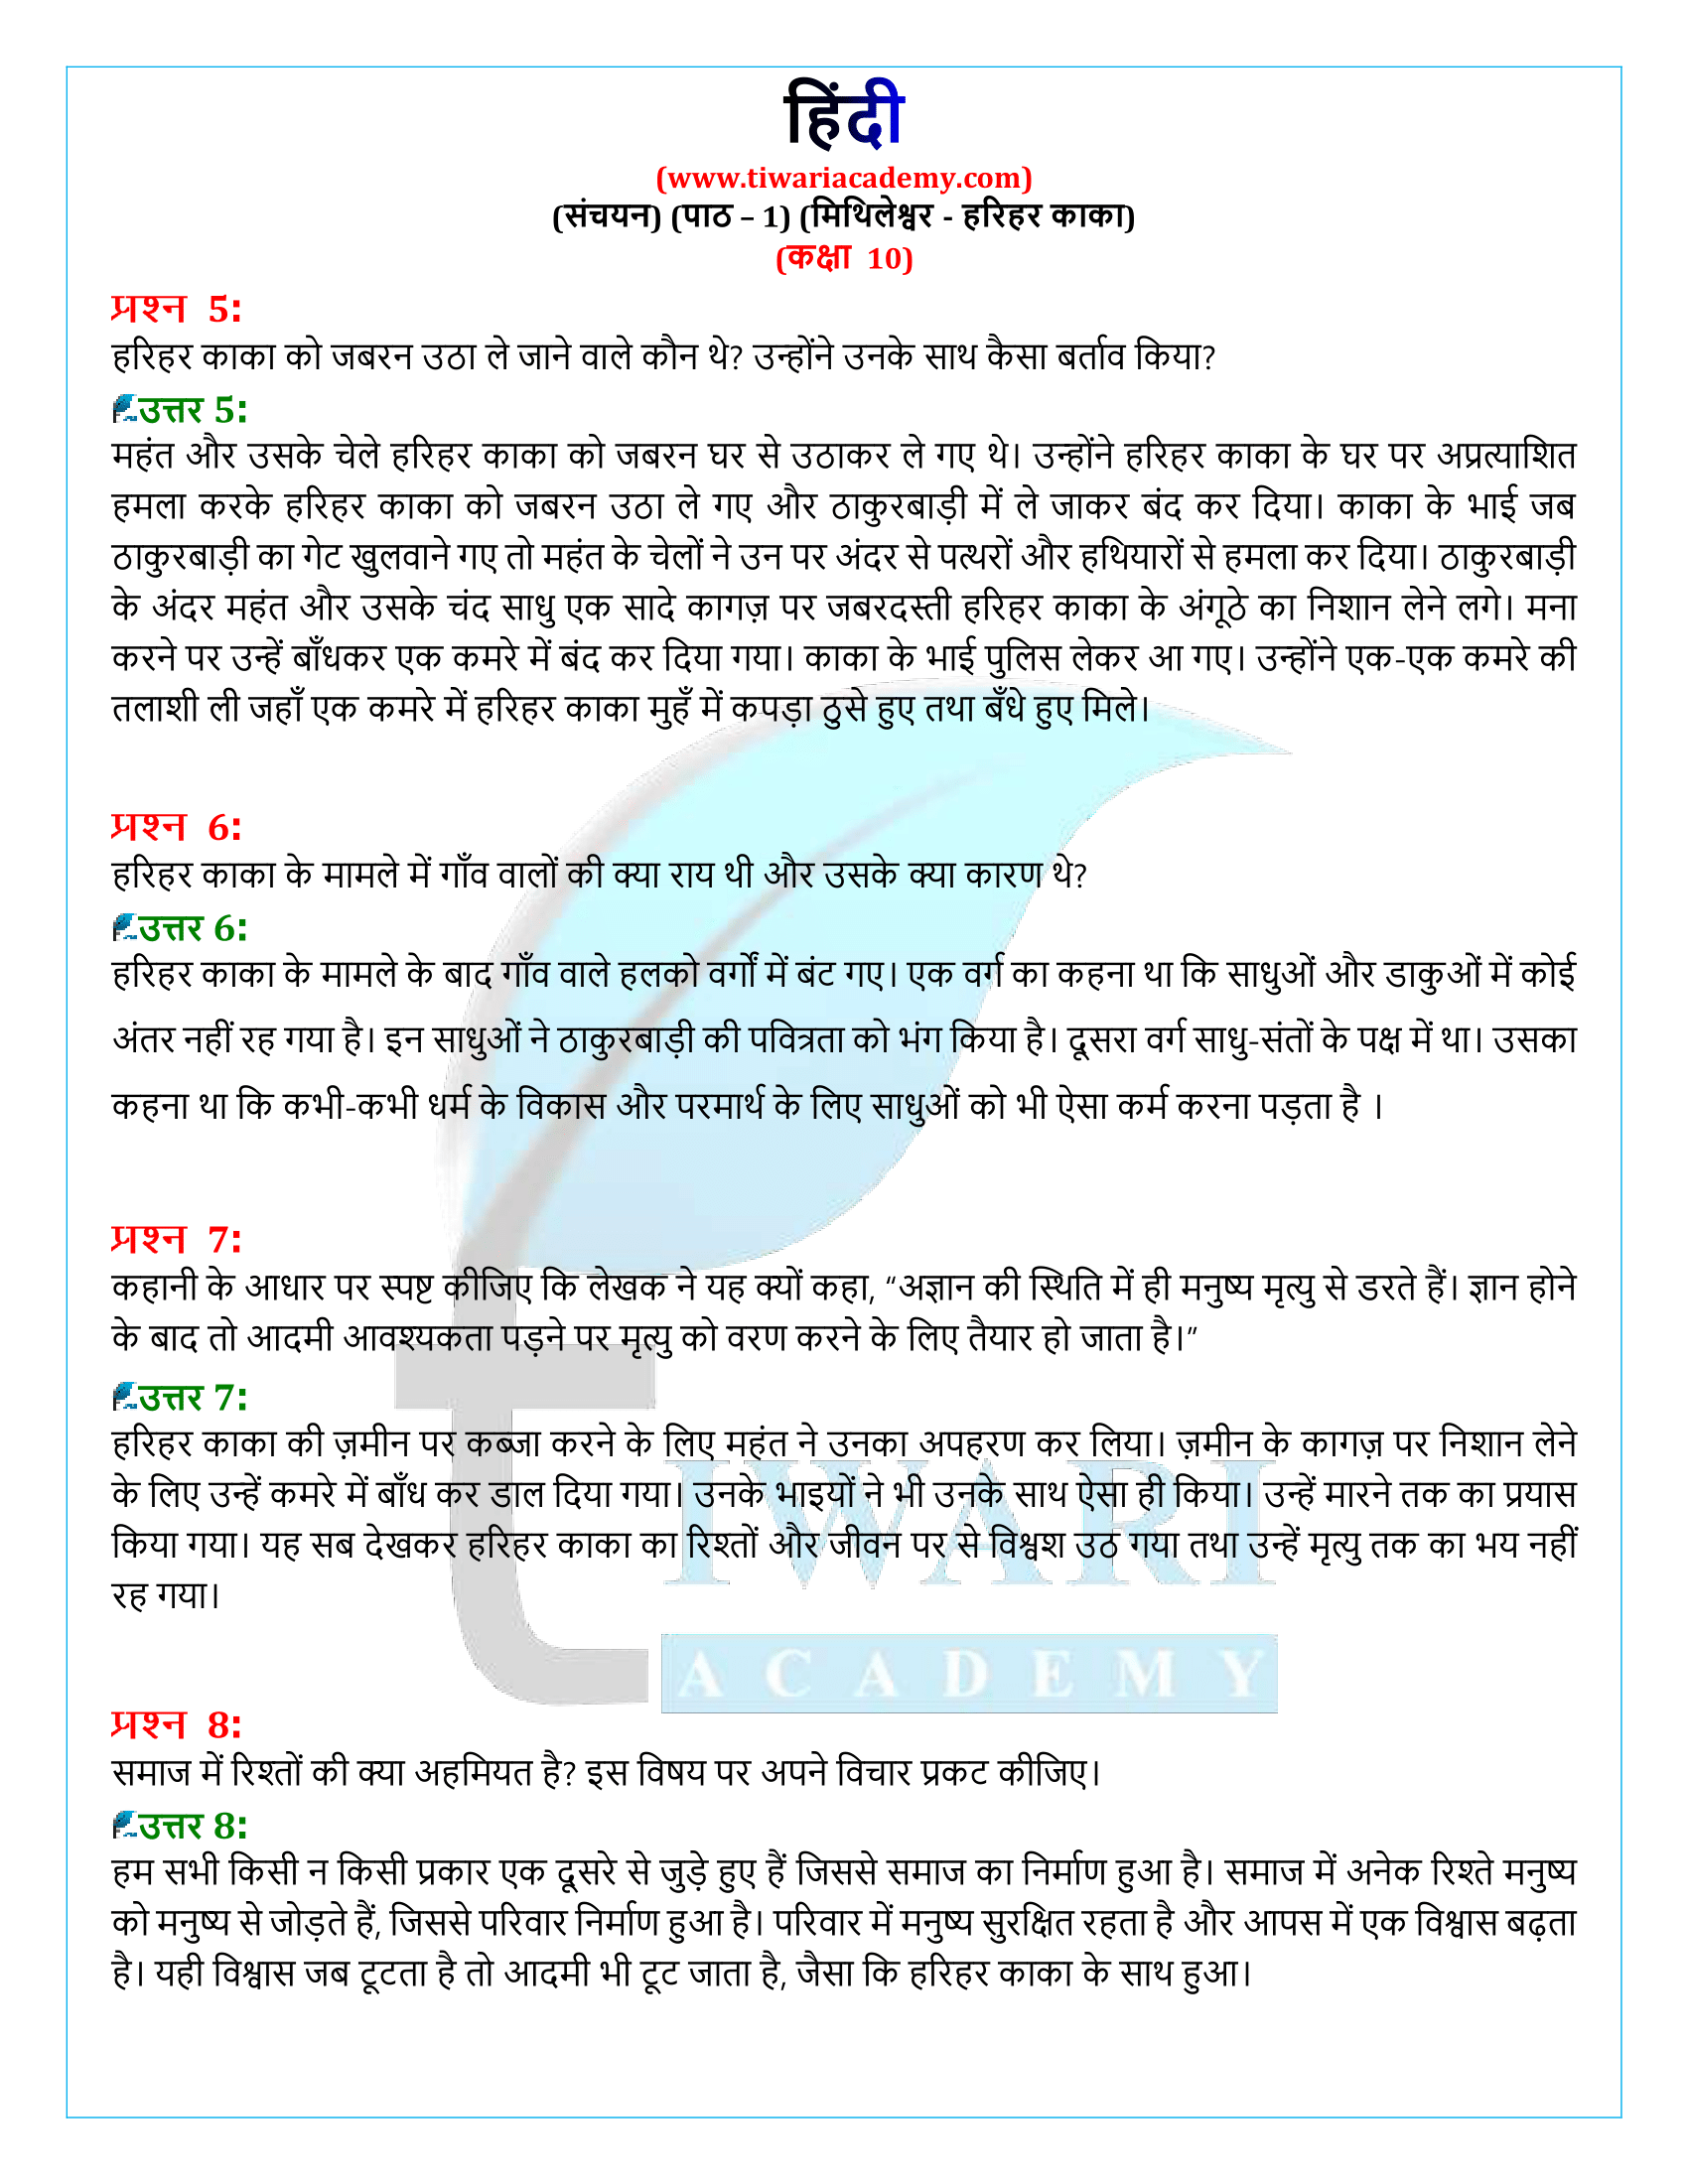 कक्षा 10 हिंदी संचयन अध्याय 1 के हल